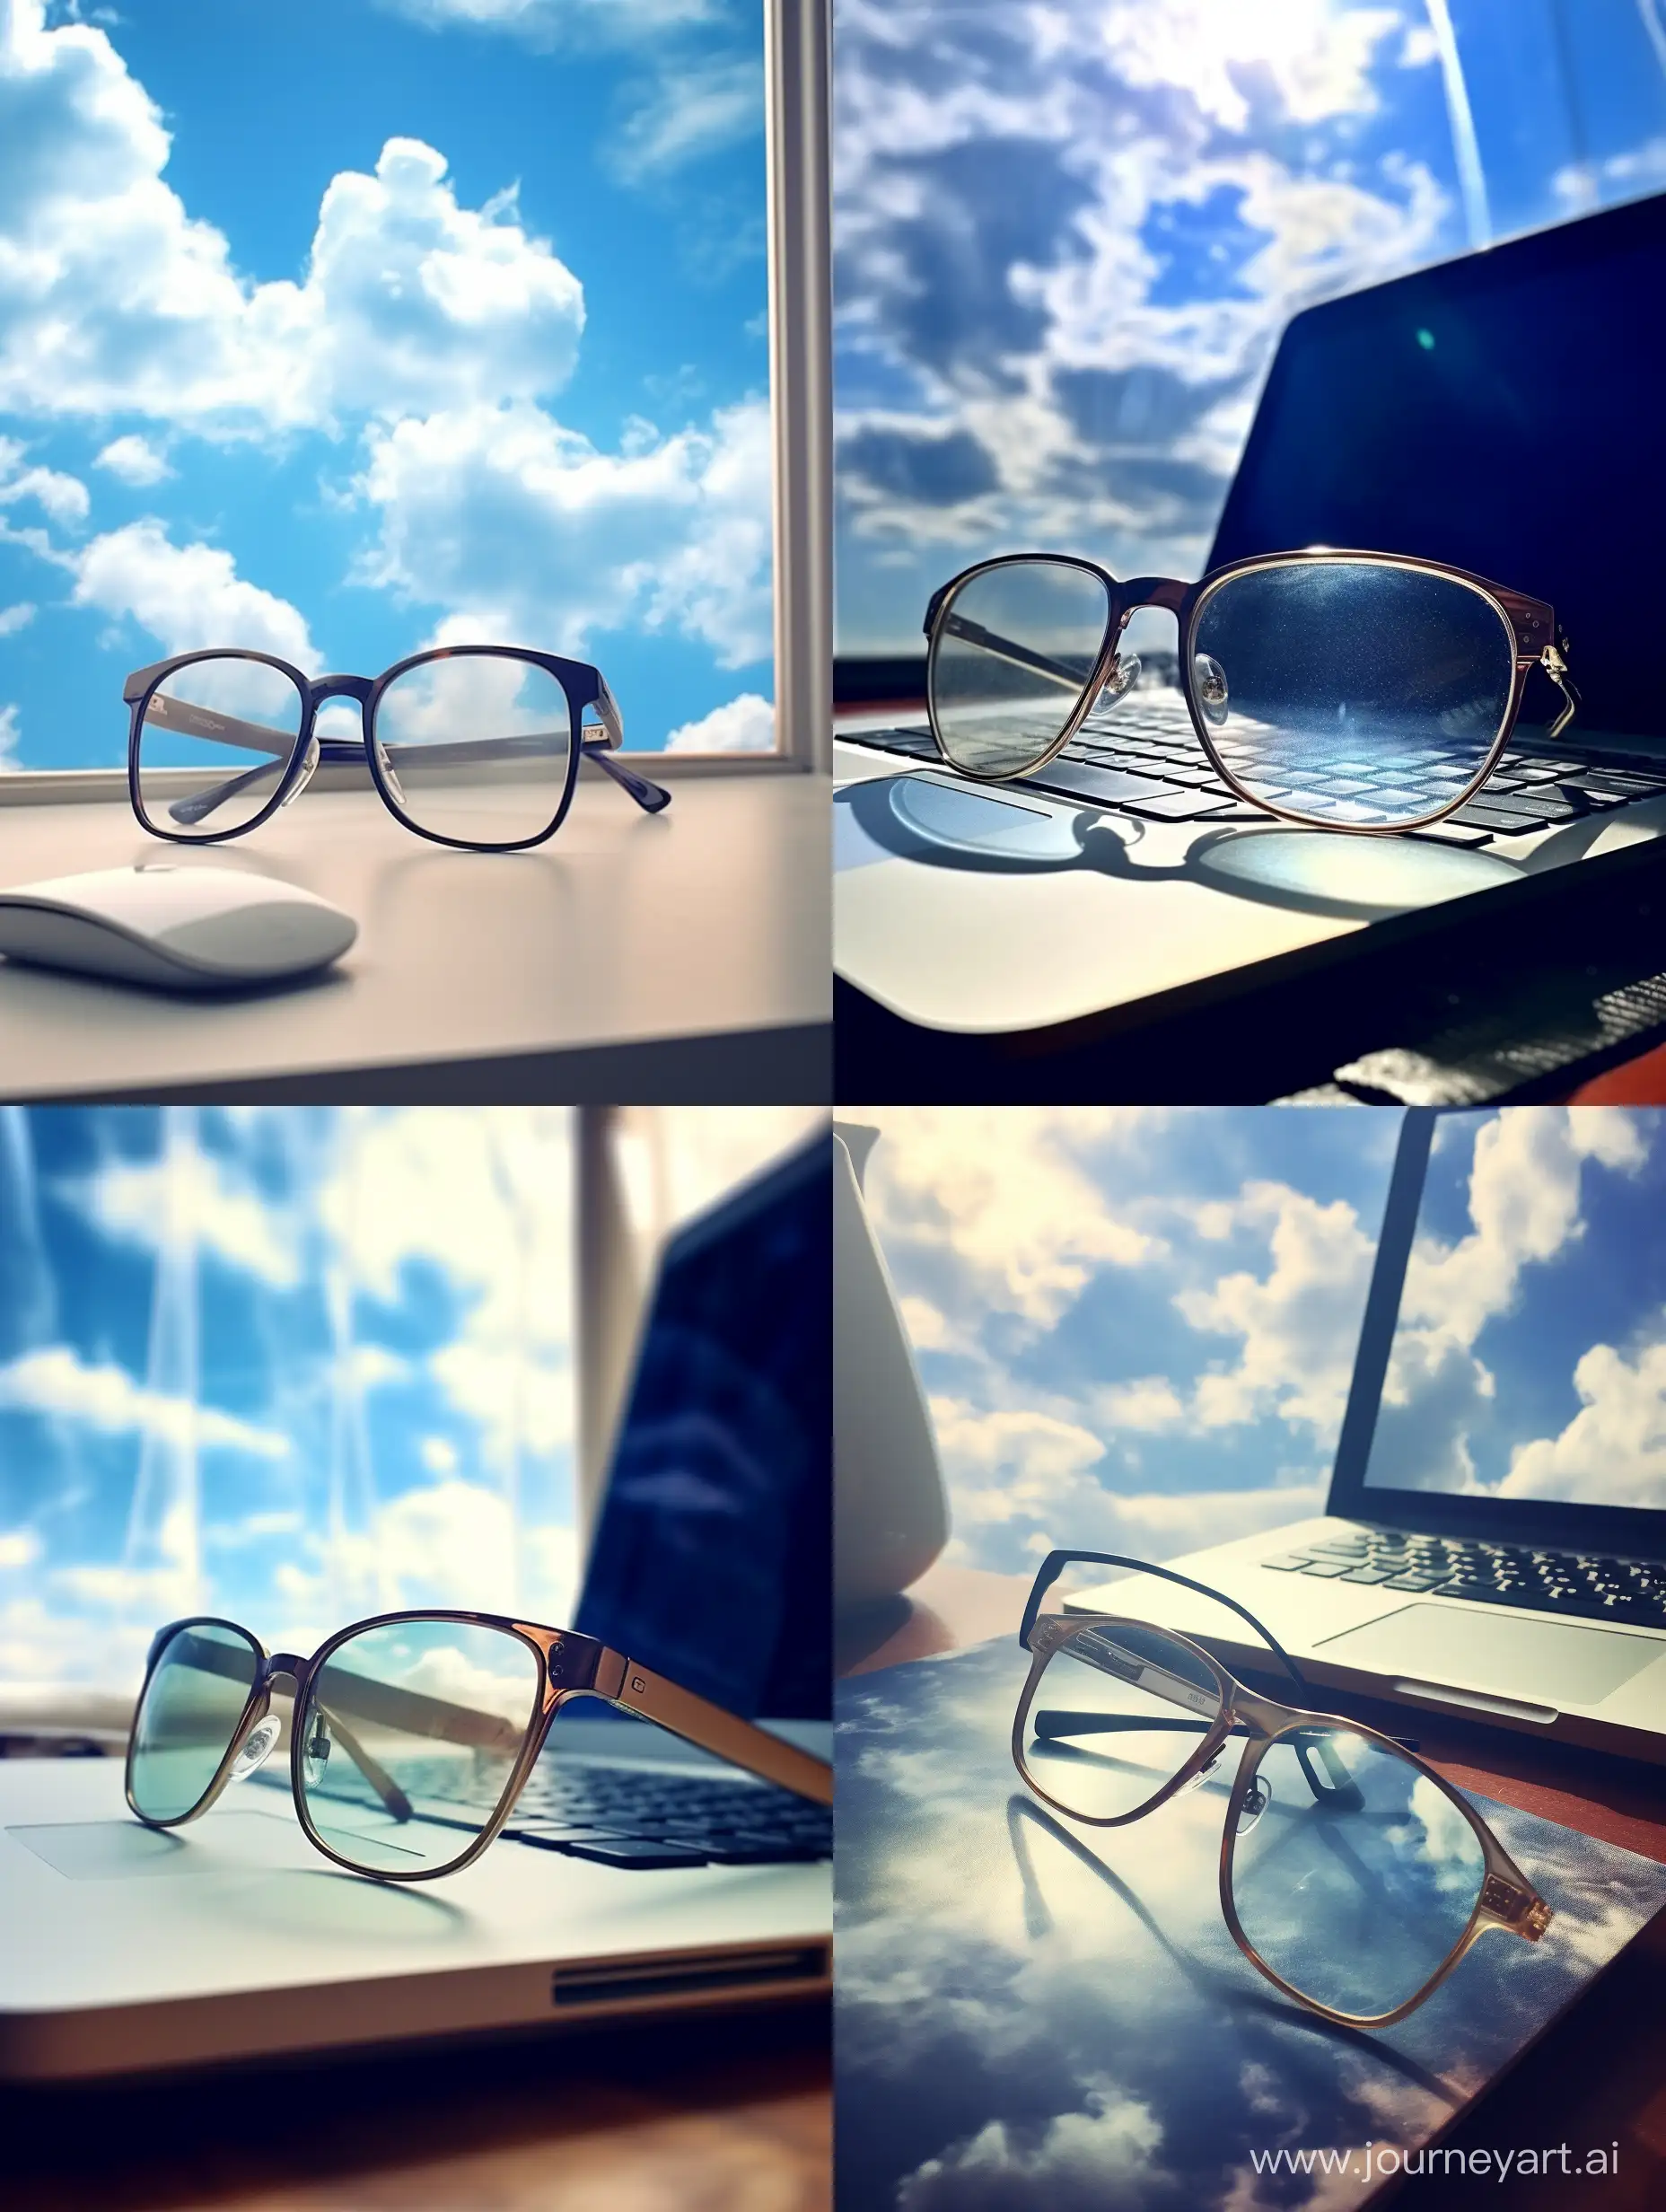 <电脑桌上放着眼镜>电脑、强光效果、质感、白天、窗口蔚蓝天空、摄影效果